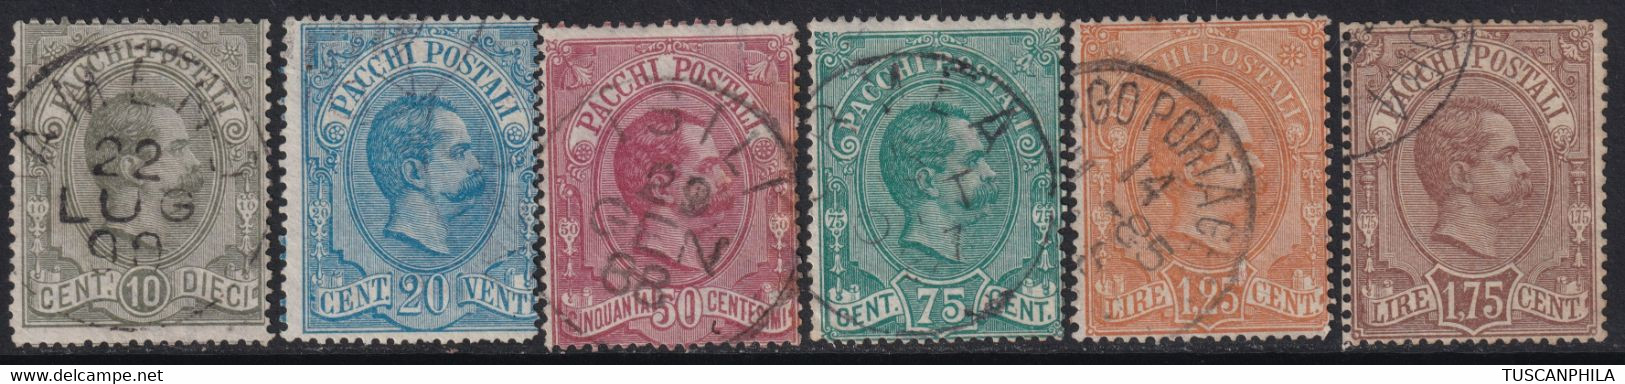 1884/86 - Umberto Pacchi Postali Serie Completa Usata F.Ray, Colla - Sassone S.2100 - Paketmarken